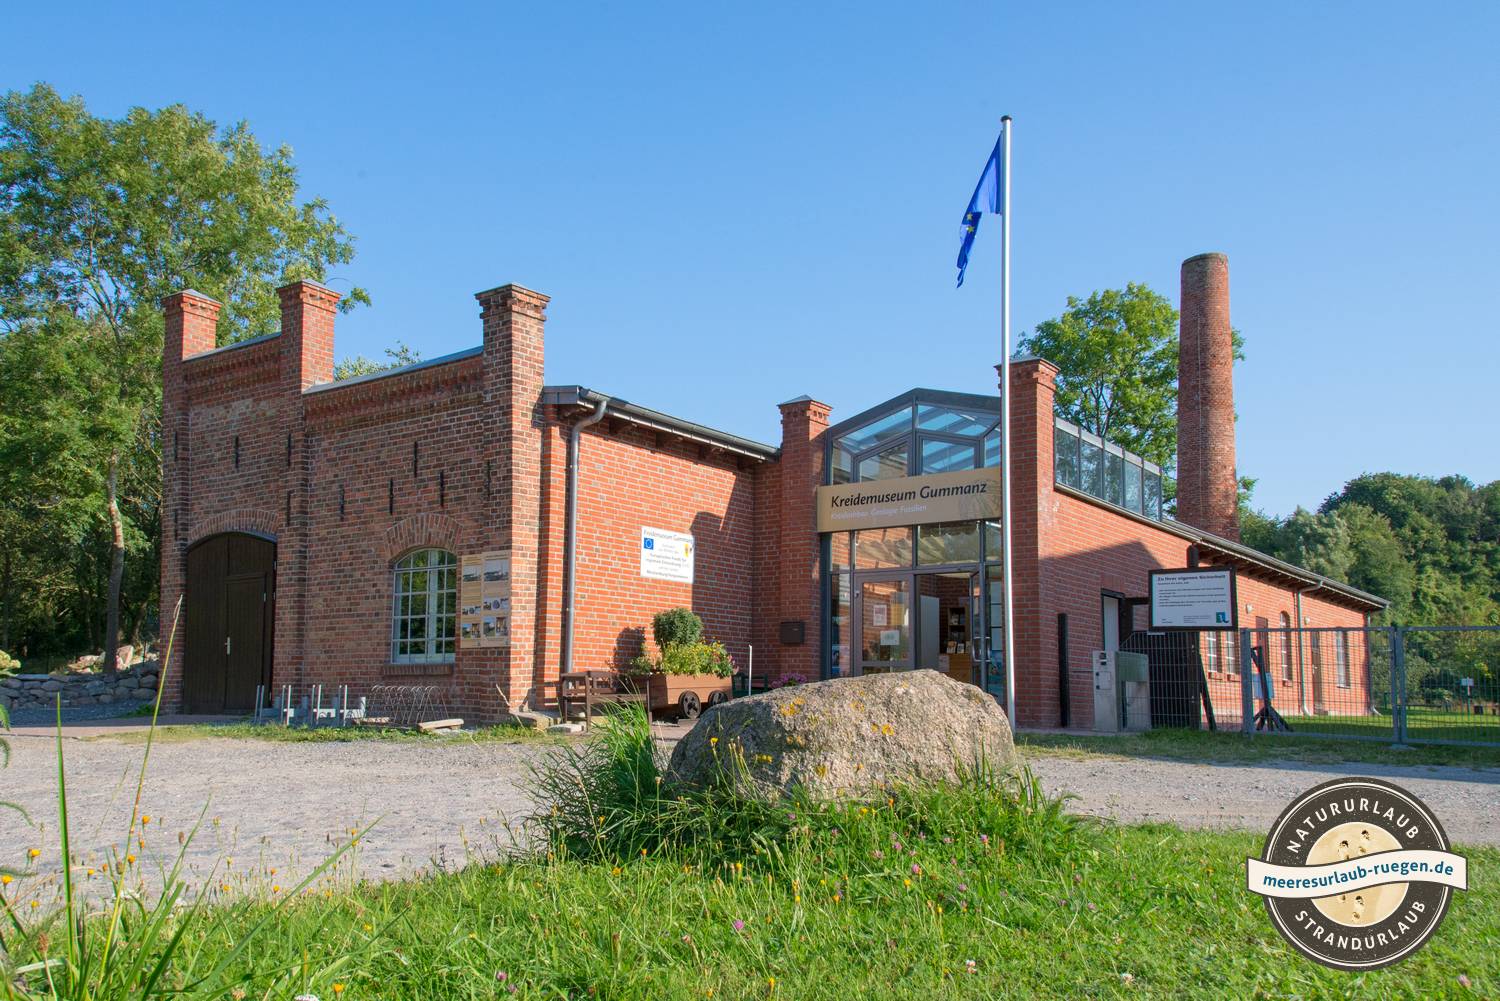 Das Kreidemuseum Gummanz bei Neddesitz, Highlight unter den Museen von Rügen